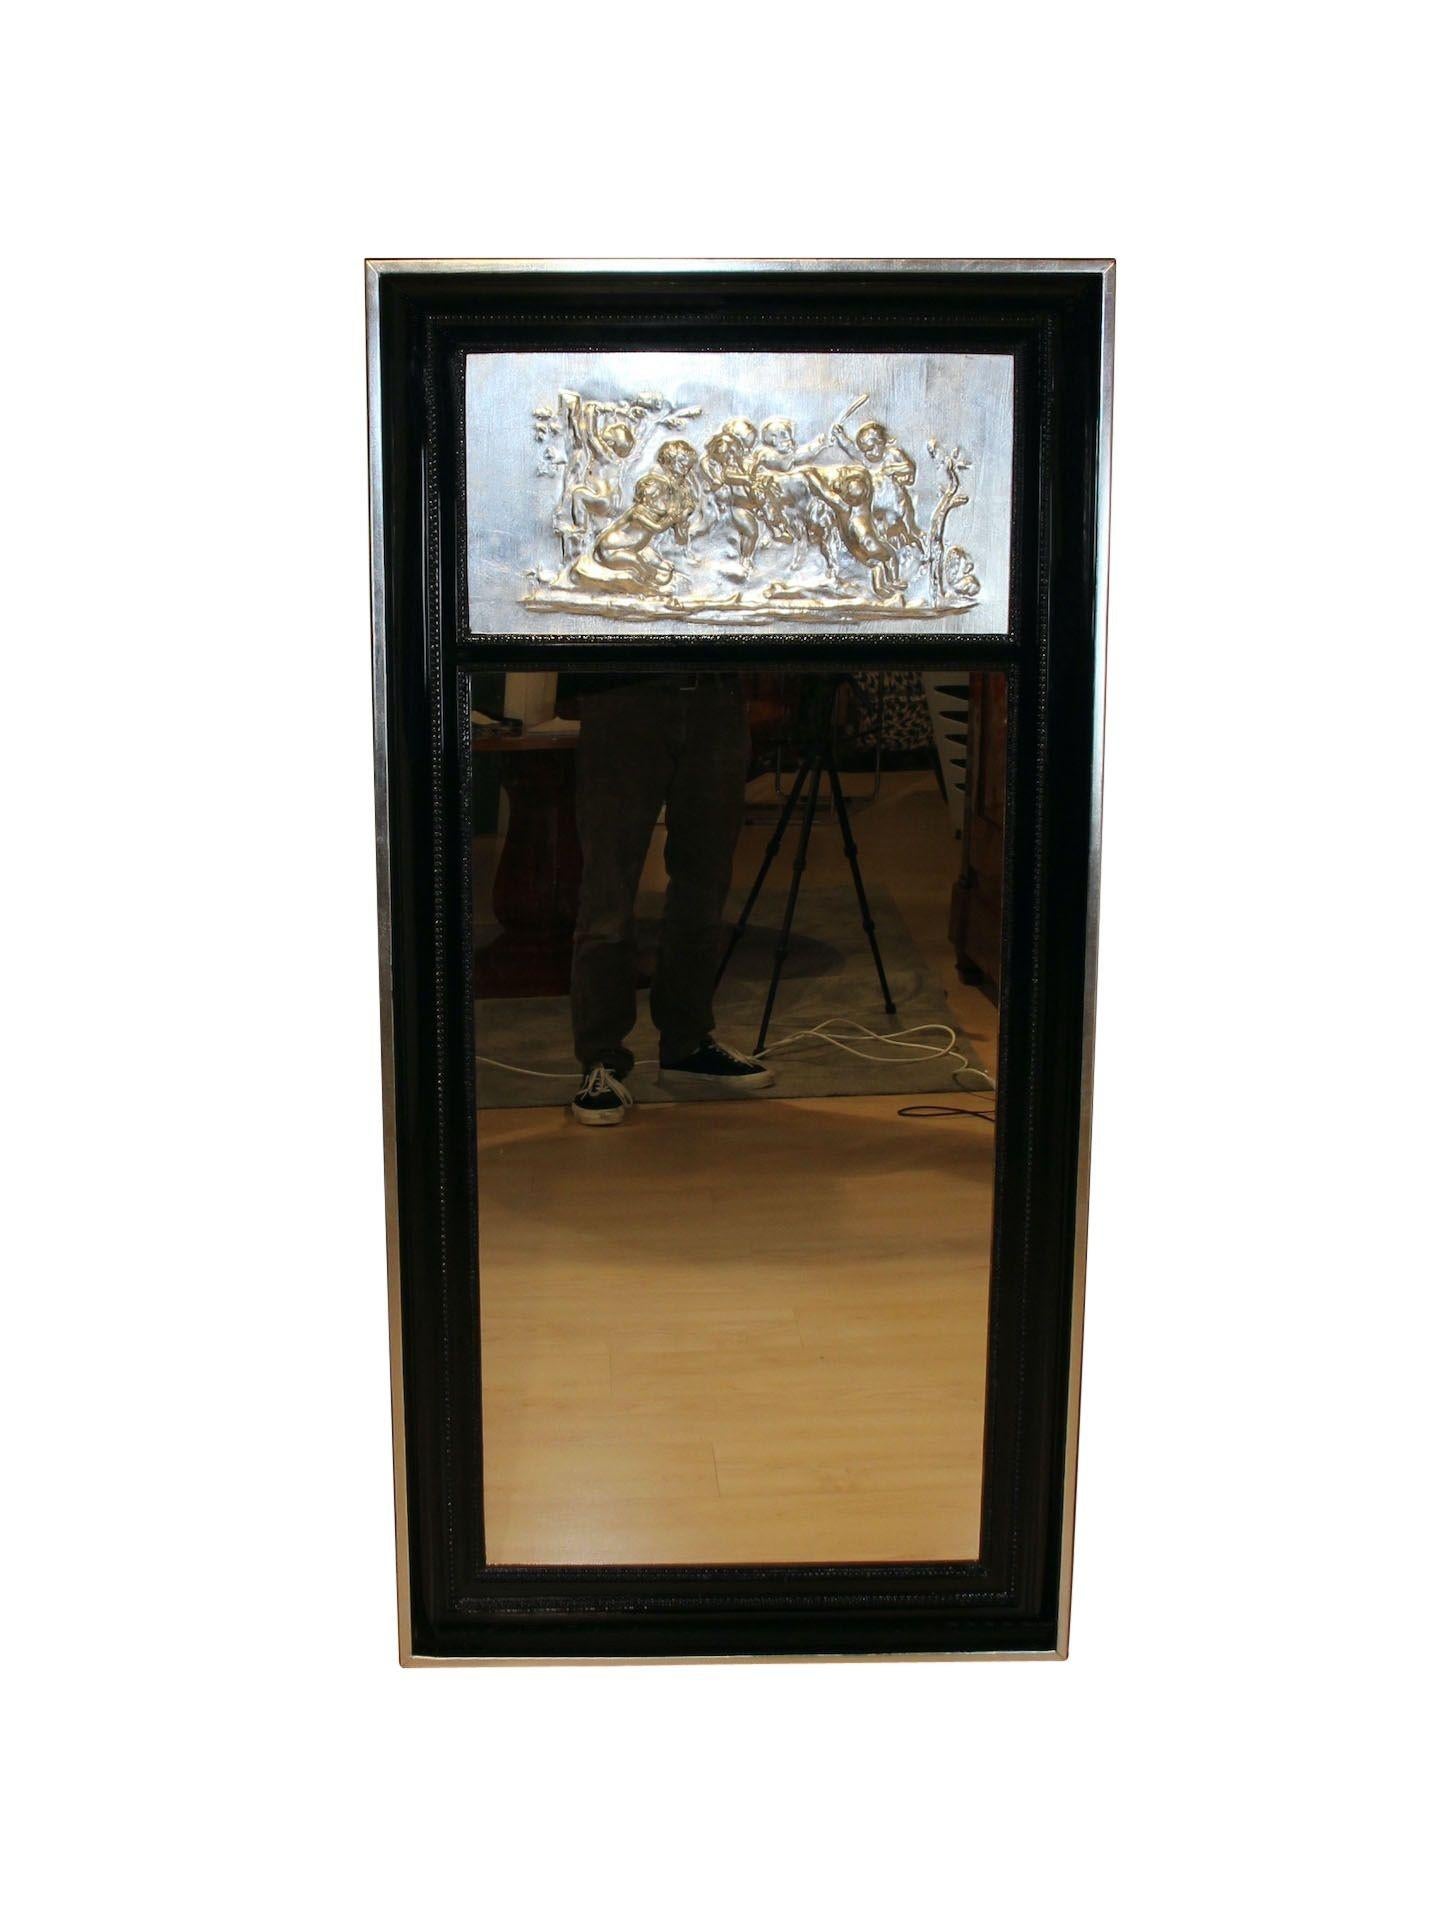 Großer Art-Déco-Säulenspiegel, schwarzer Lack und Blattsilber, Frankreich um 1920.
Schwarzes Klavierlackholz. Hohler Rahmen mit zwei Perlenstreifen.
Oben, versilberter Gipsdekor einer Puttenszene. Der äußere Rand ist mit Blattsilber